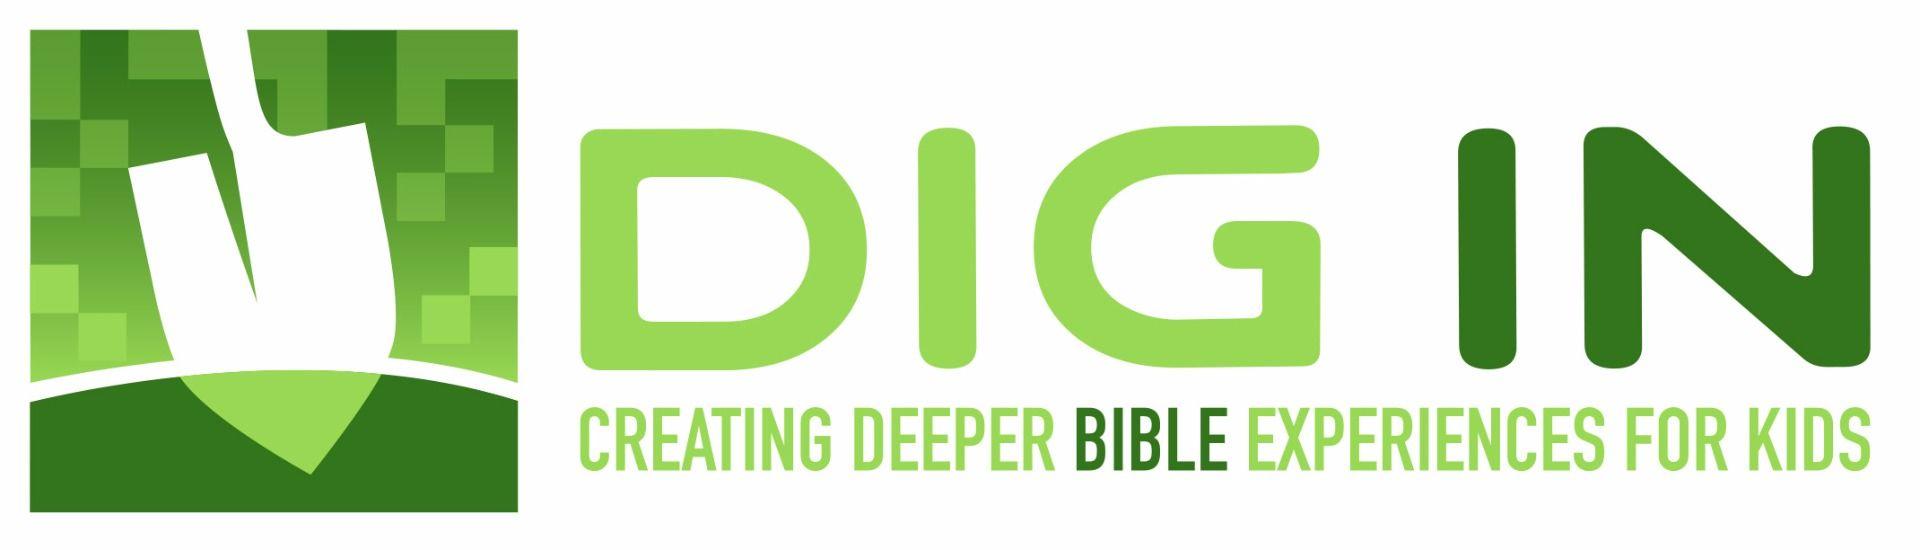 Dig Logo - Downloadable Logo Artwork – Group Support